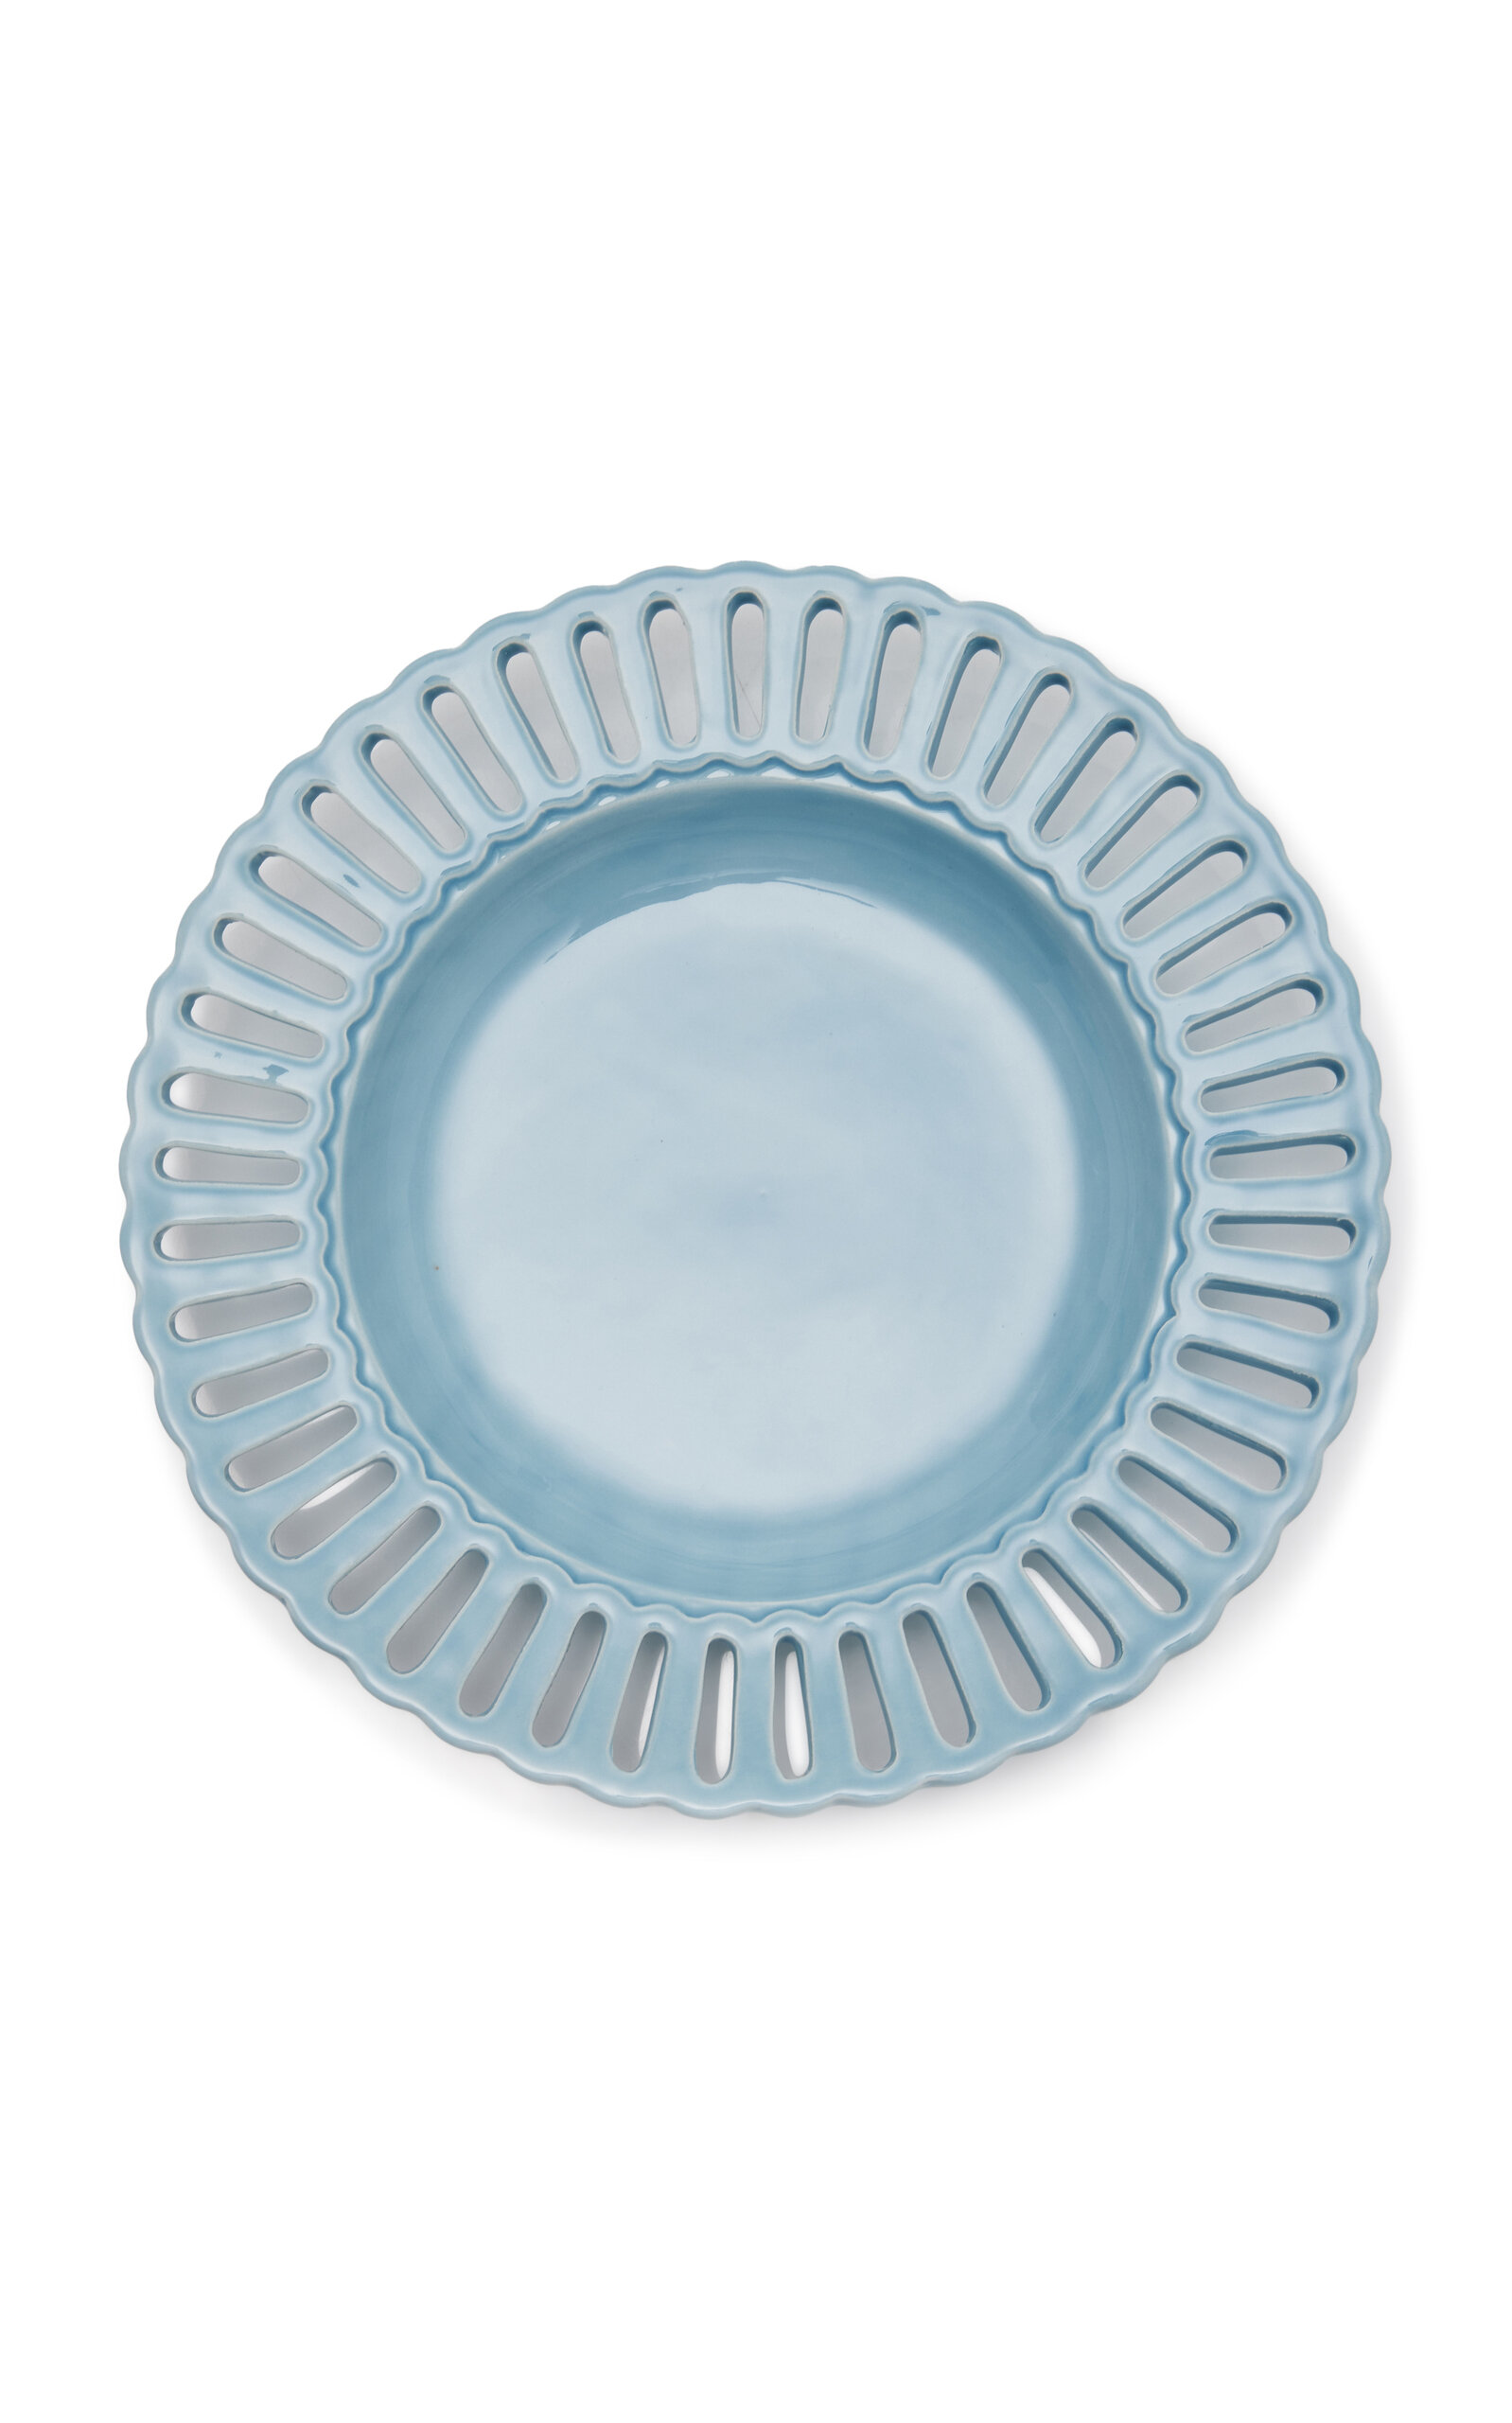 Moda Domus Balconata Creamware Soup Plate In Blue